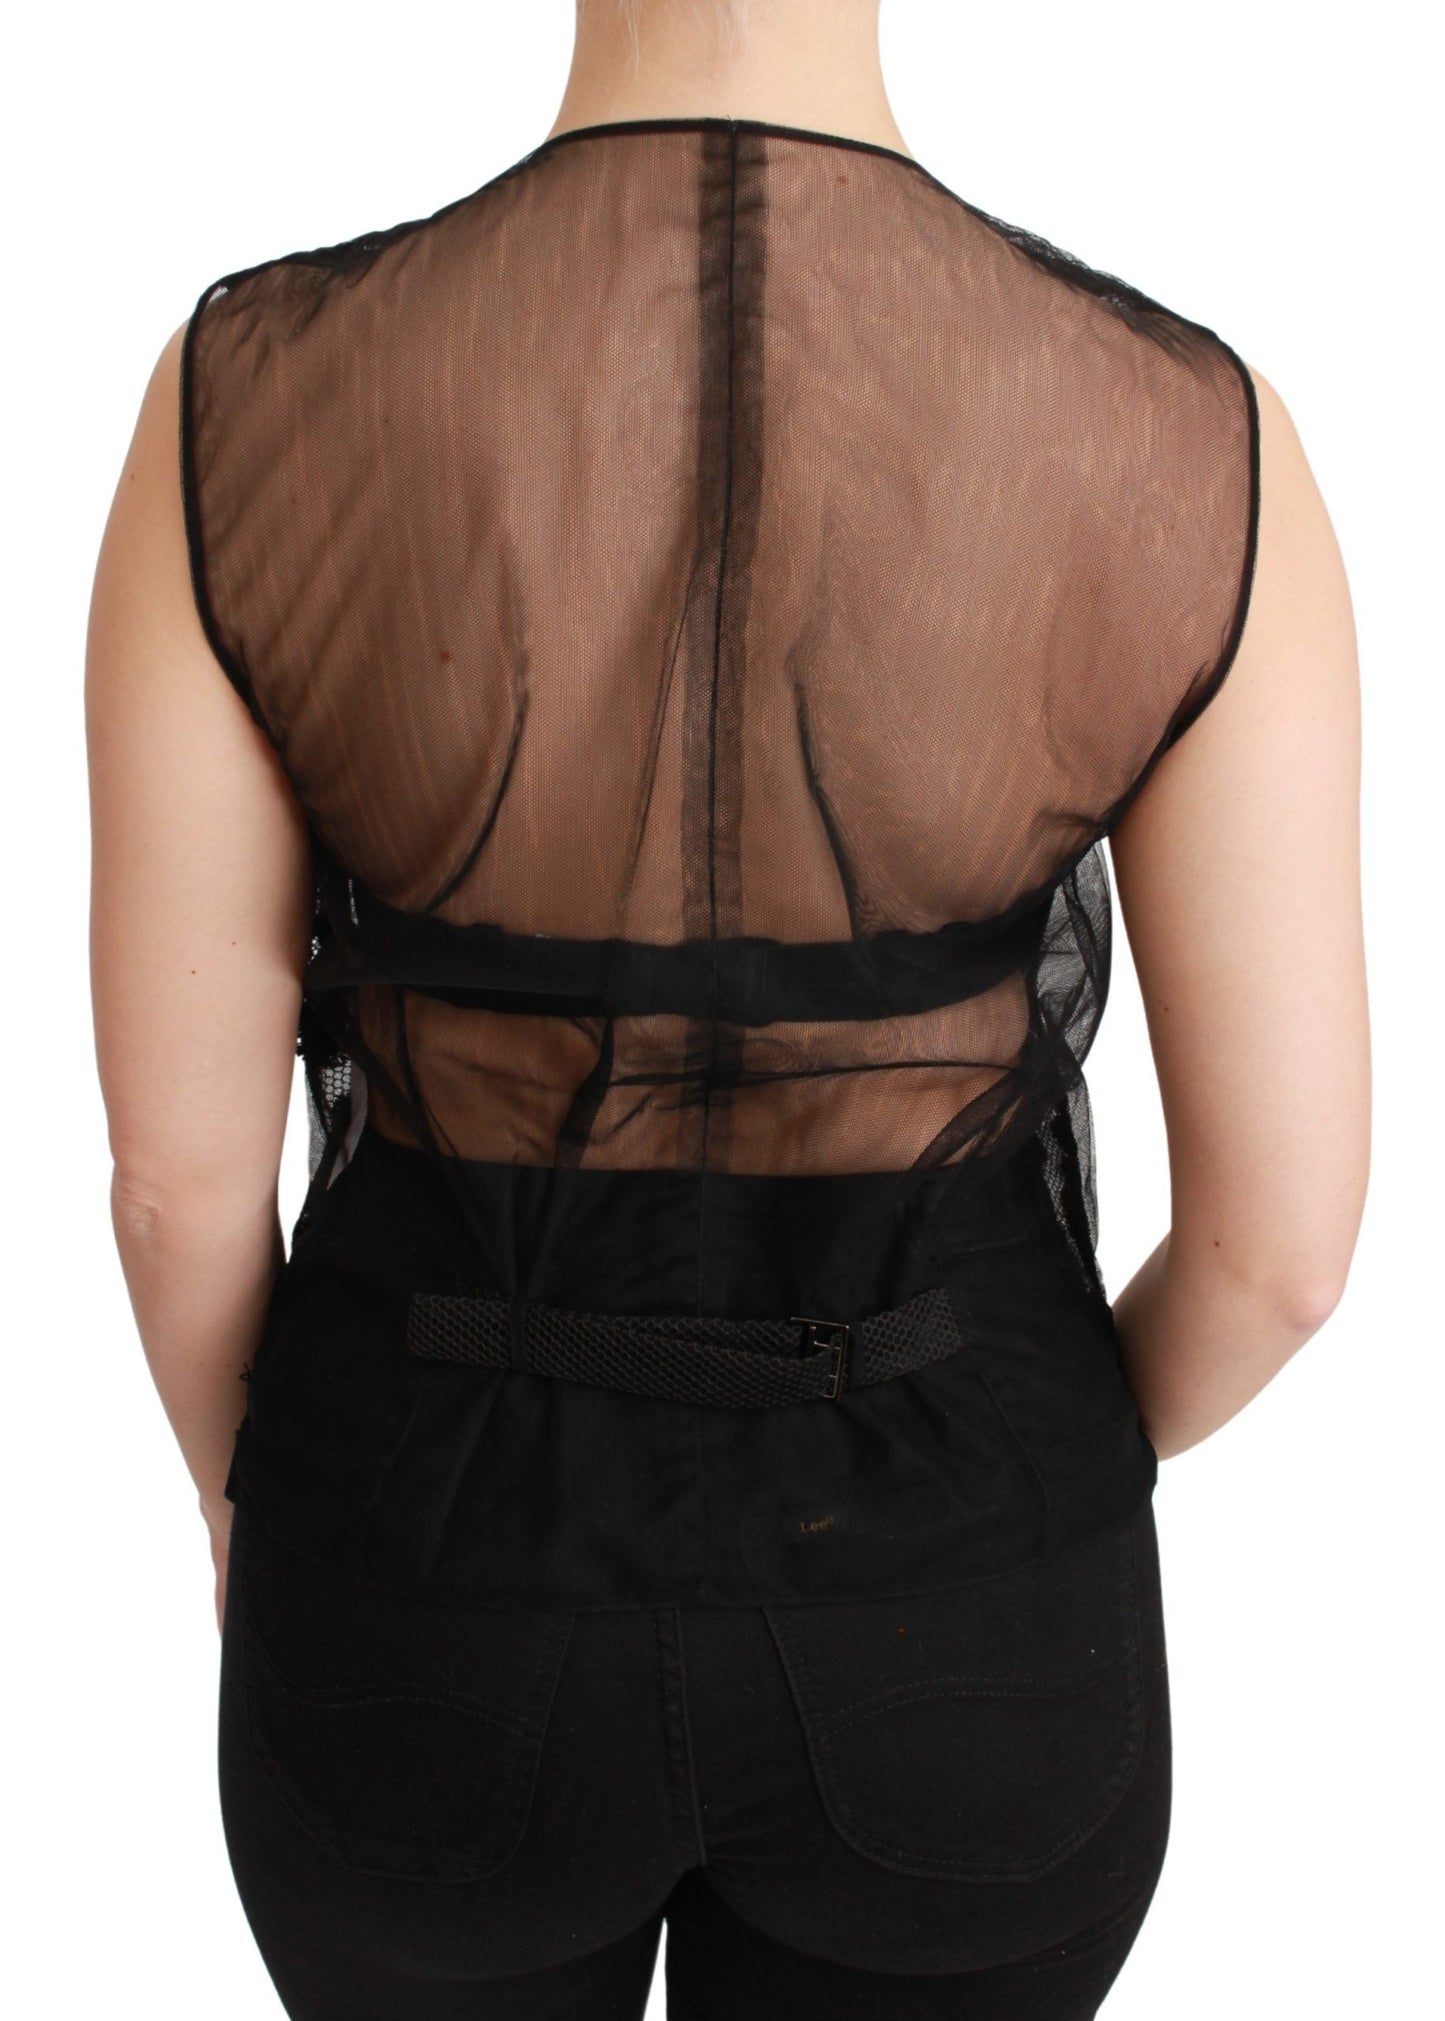 Dolce & Gabbana Elegant Floral Black Silk Blend Vest